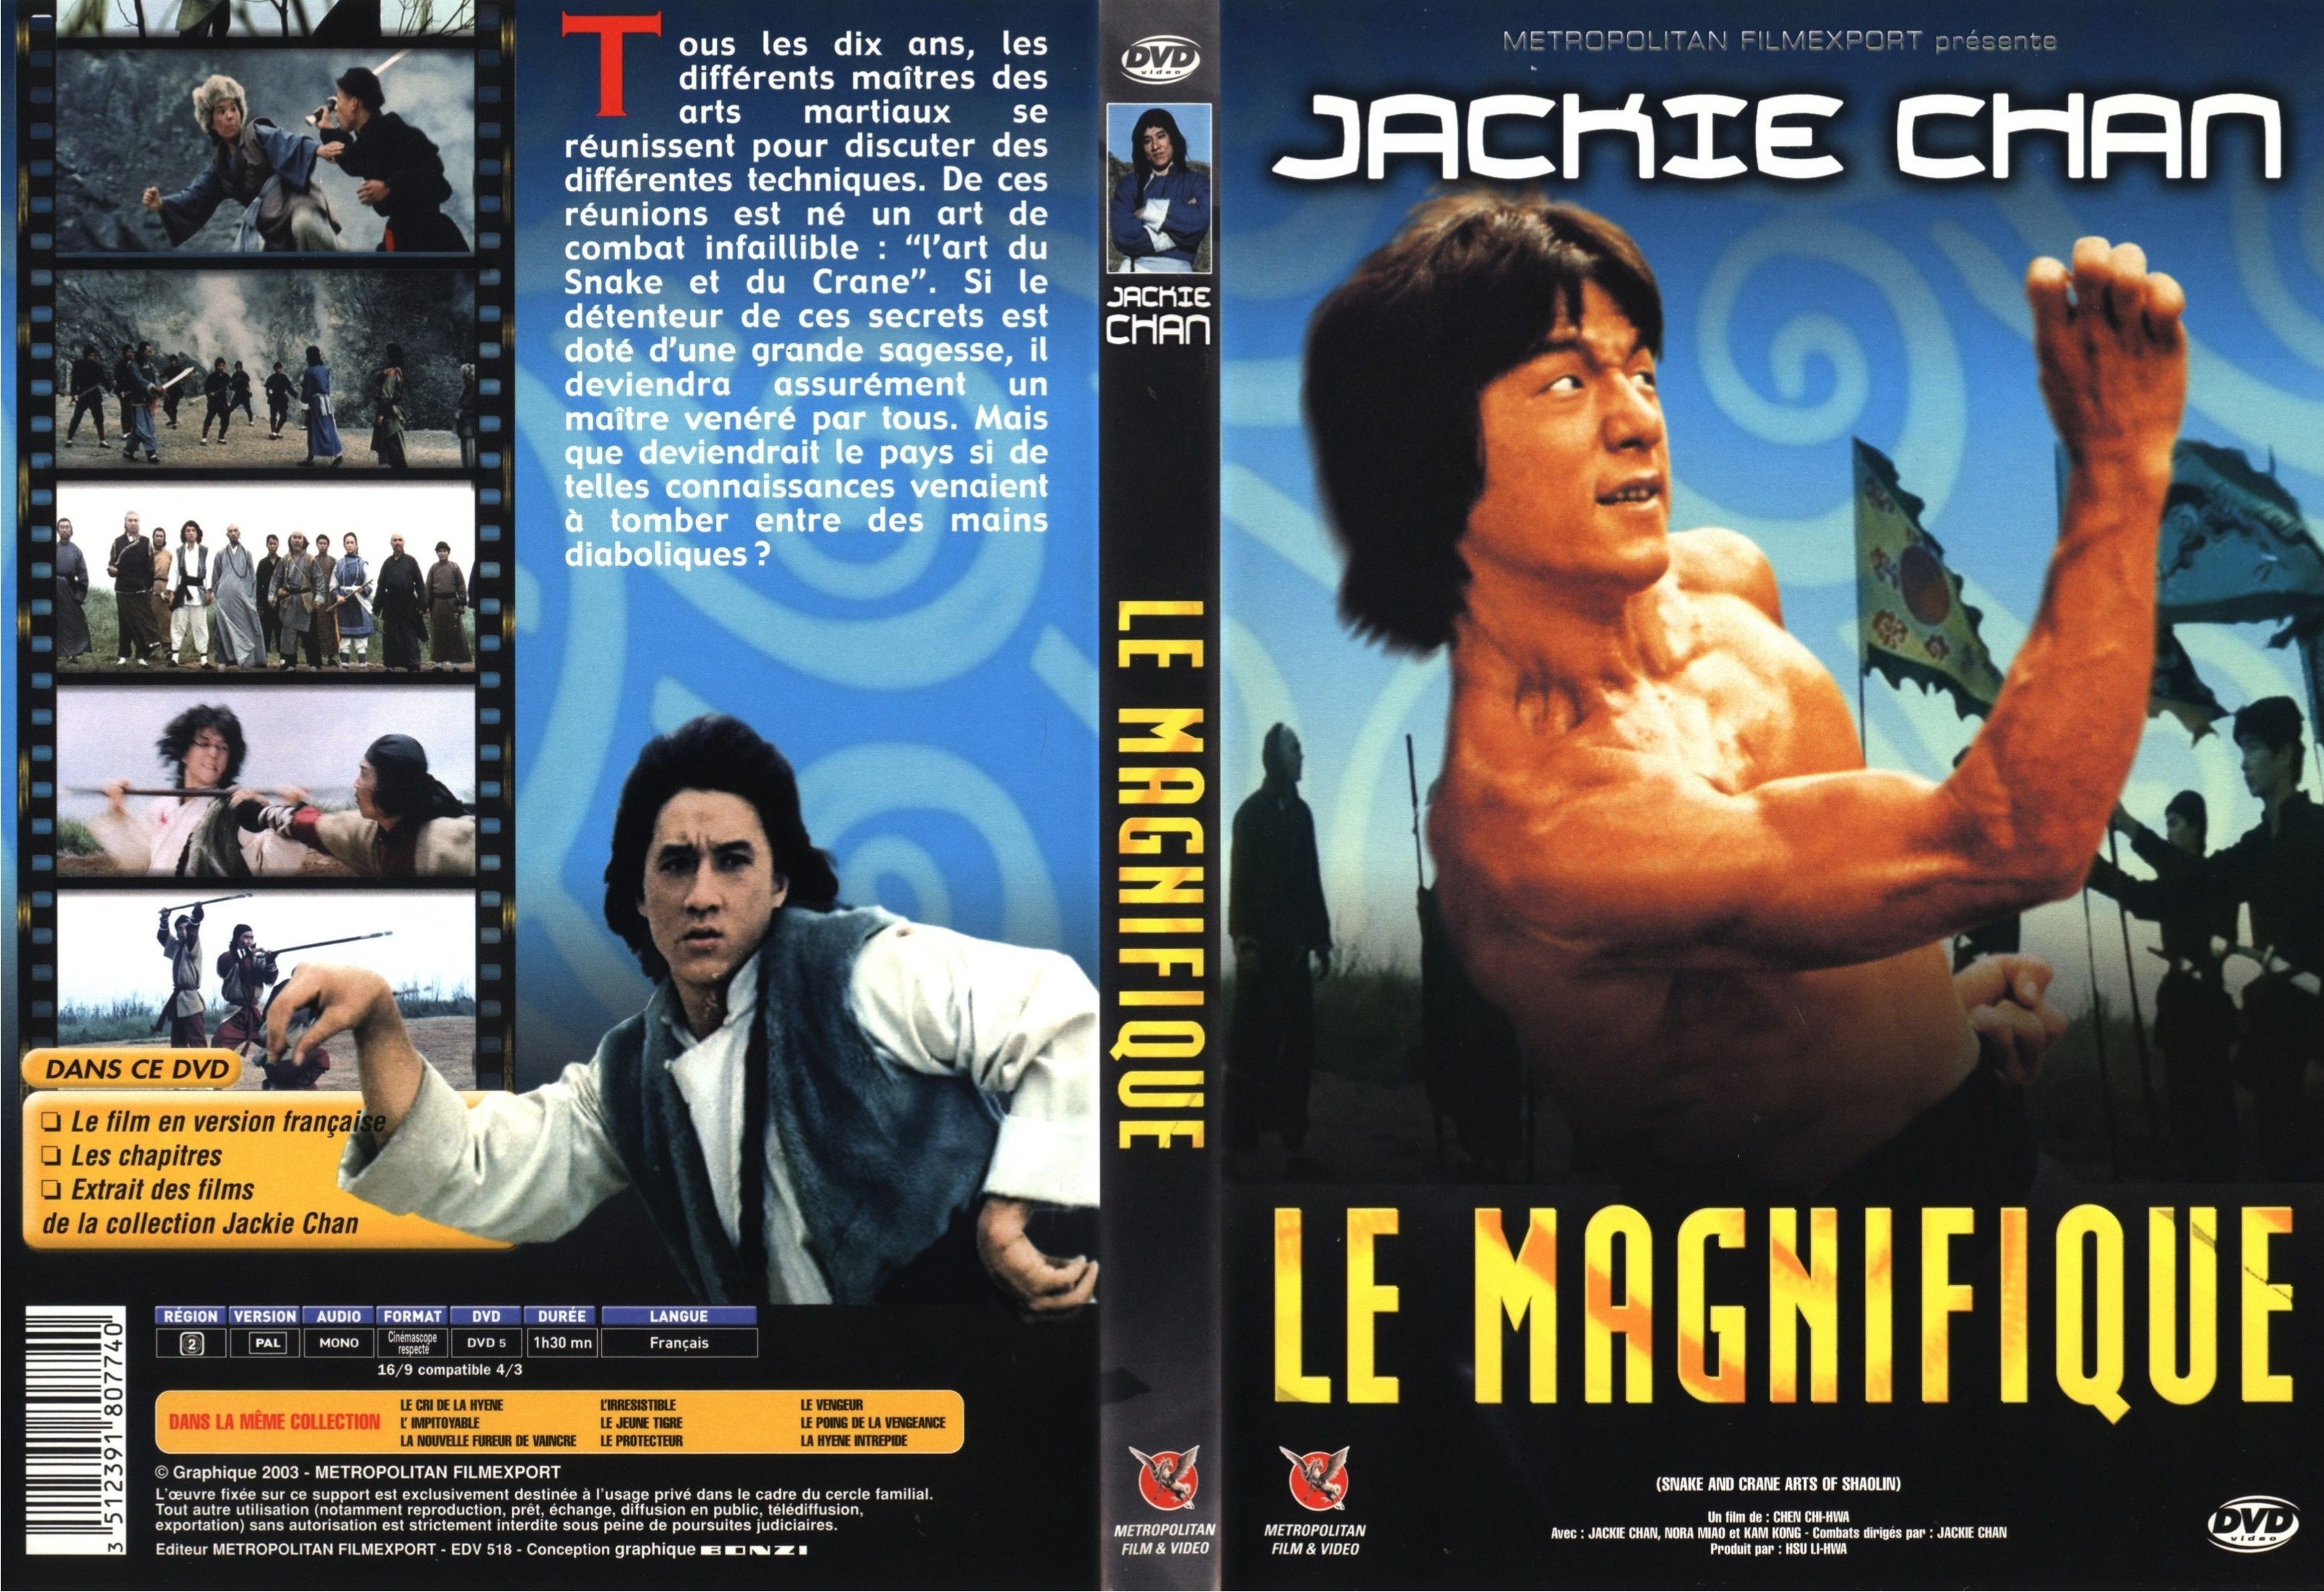 Jaquette DVD Le magnifique v3